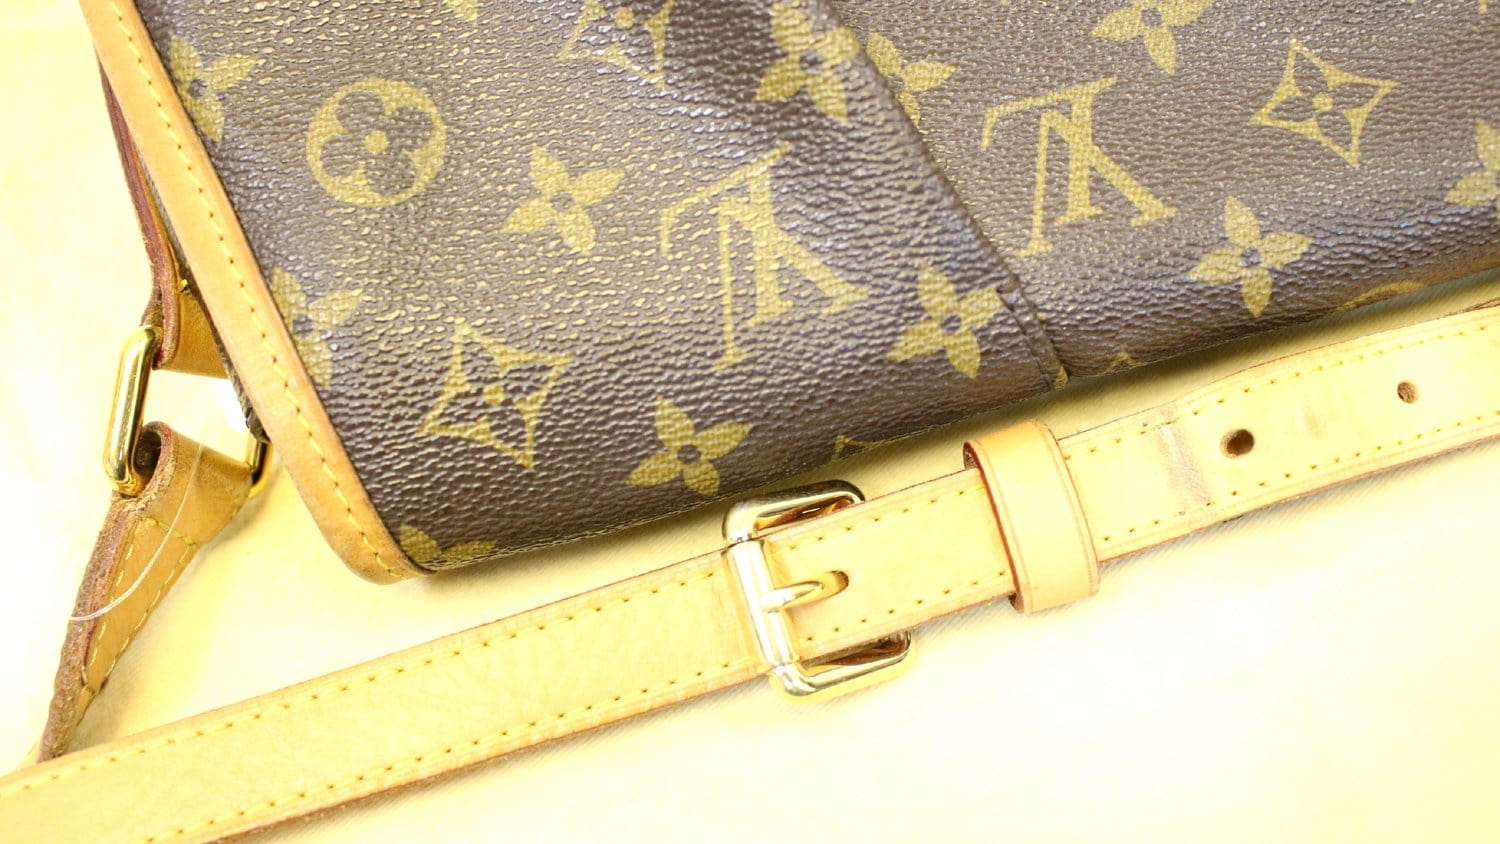 Louis Vuitton Menilmontant Shoulder bag 389033